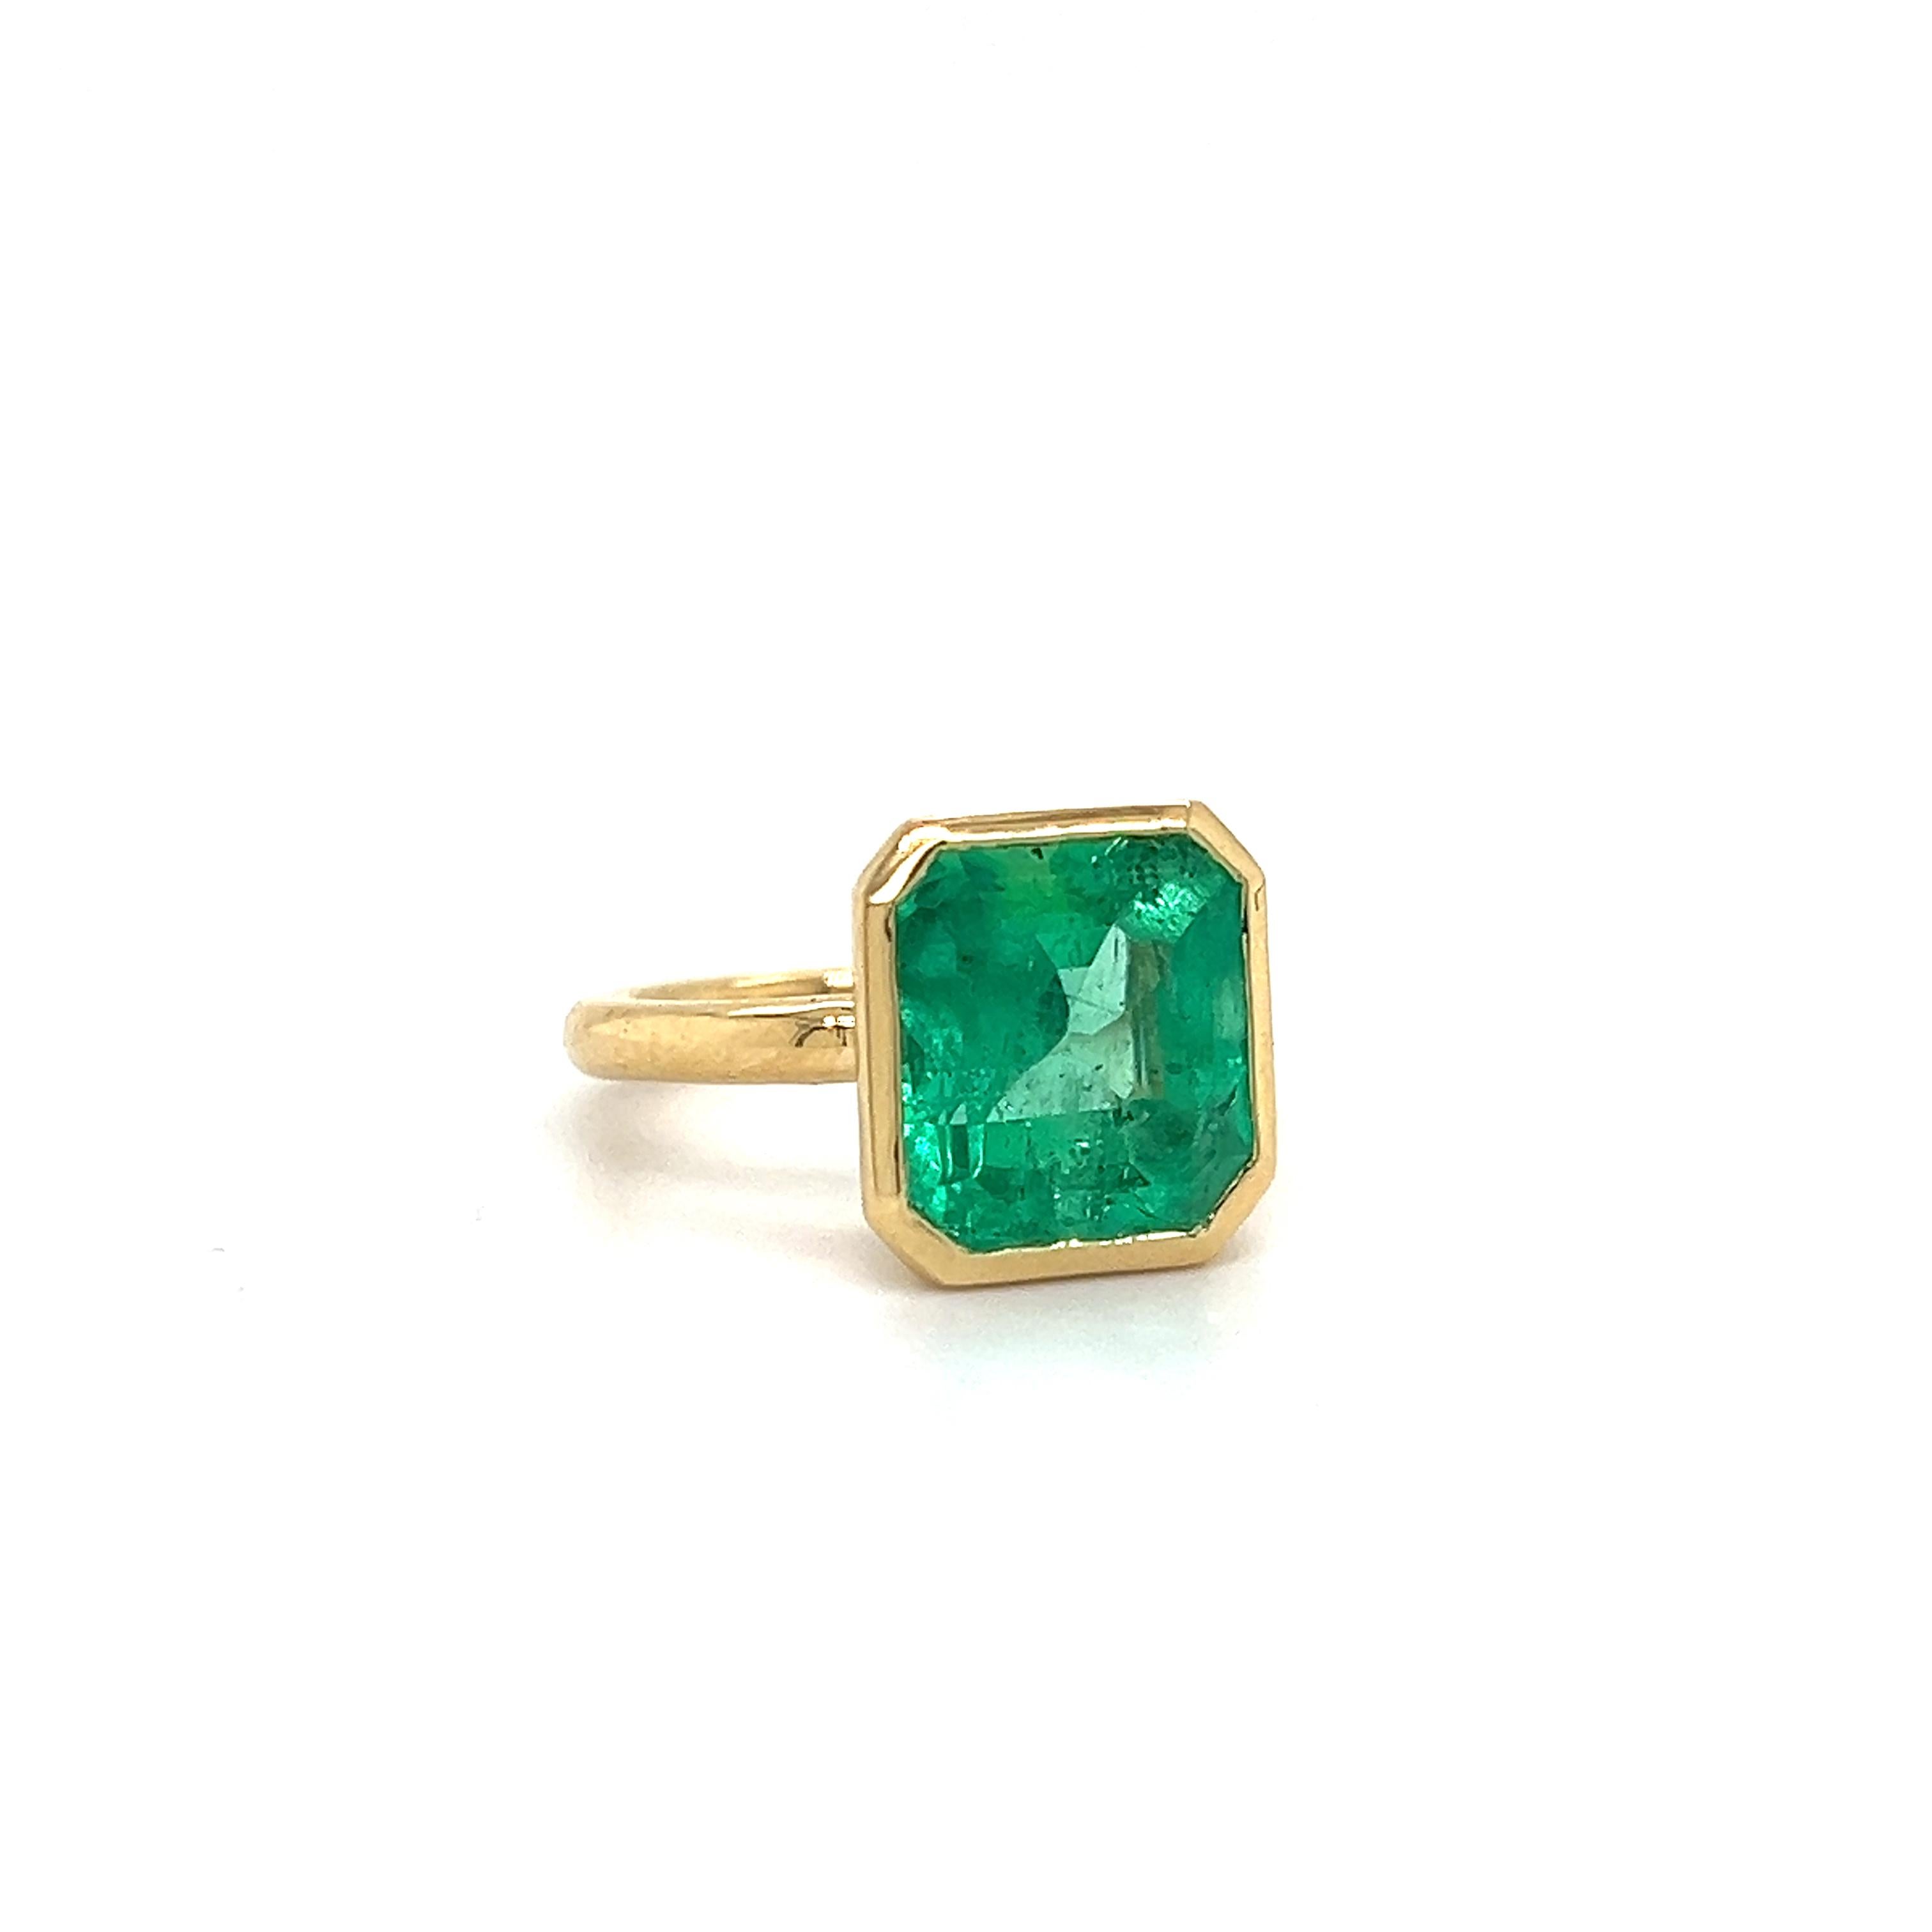 Schöner handgefertigter Ring aus 18k Gelbgold. Der Ring hebt einen kolumbianischen Smaragd hervor, der eine elektrisch grüne Farbe aufweist. 
Der Smaragd-Edelstein wiegt 6,10 Karat und ist in den 18-karätigen Goldring eingefasst. Durch die scharfen